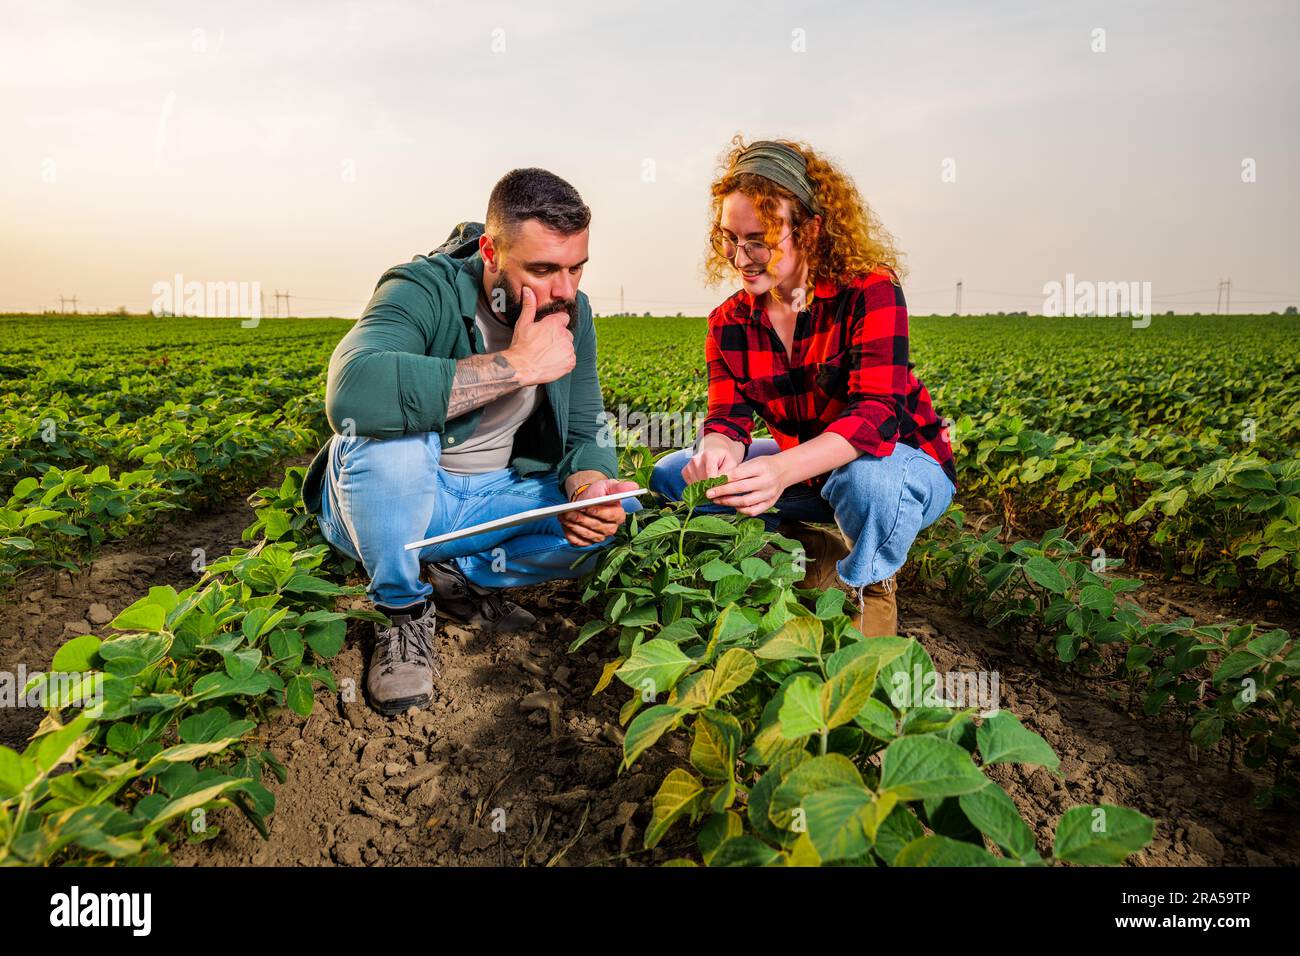 Occupazione agricola familiare. L'uomo e la donna coltivano la soia. Stanno esaminando il progresso delle piante. Foto Stock